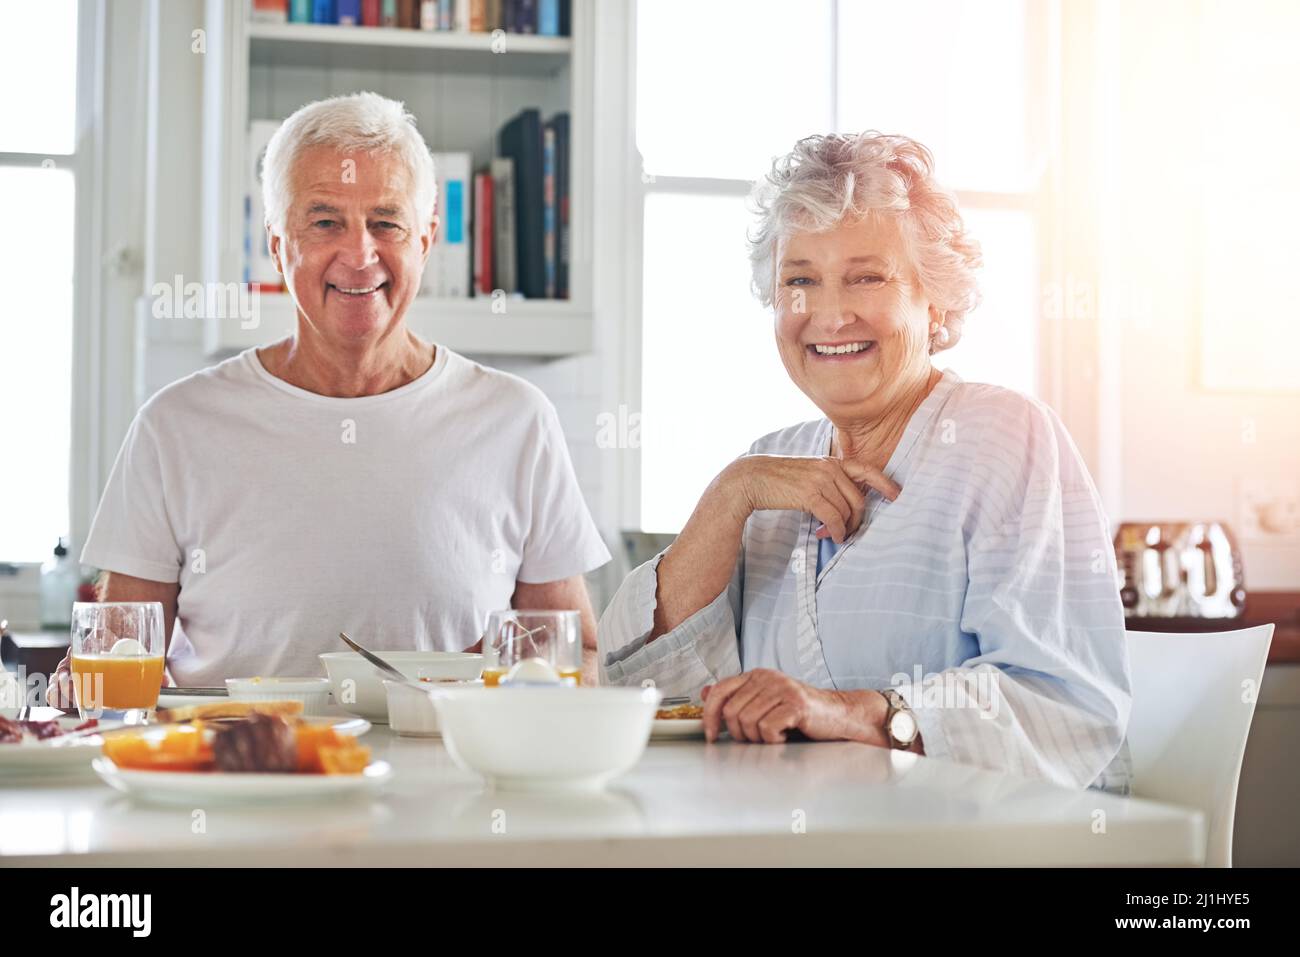 Non si tratta solo di condividere la colazione, ma anche di condividere l'amore. Ritratto di una coppia anziana che ha fatto colazione insieme a casa. Foto Stock